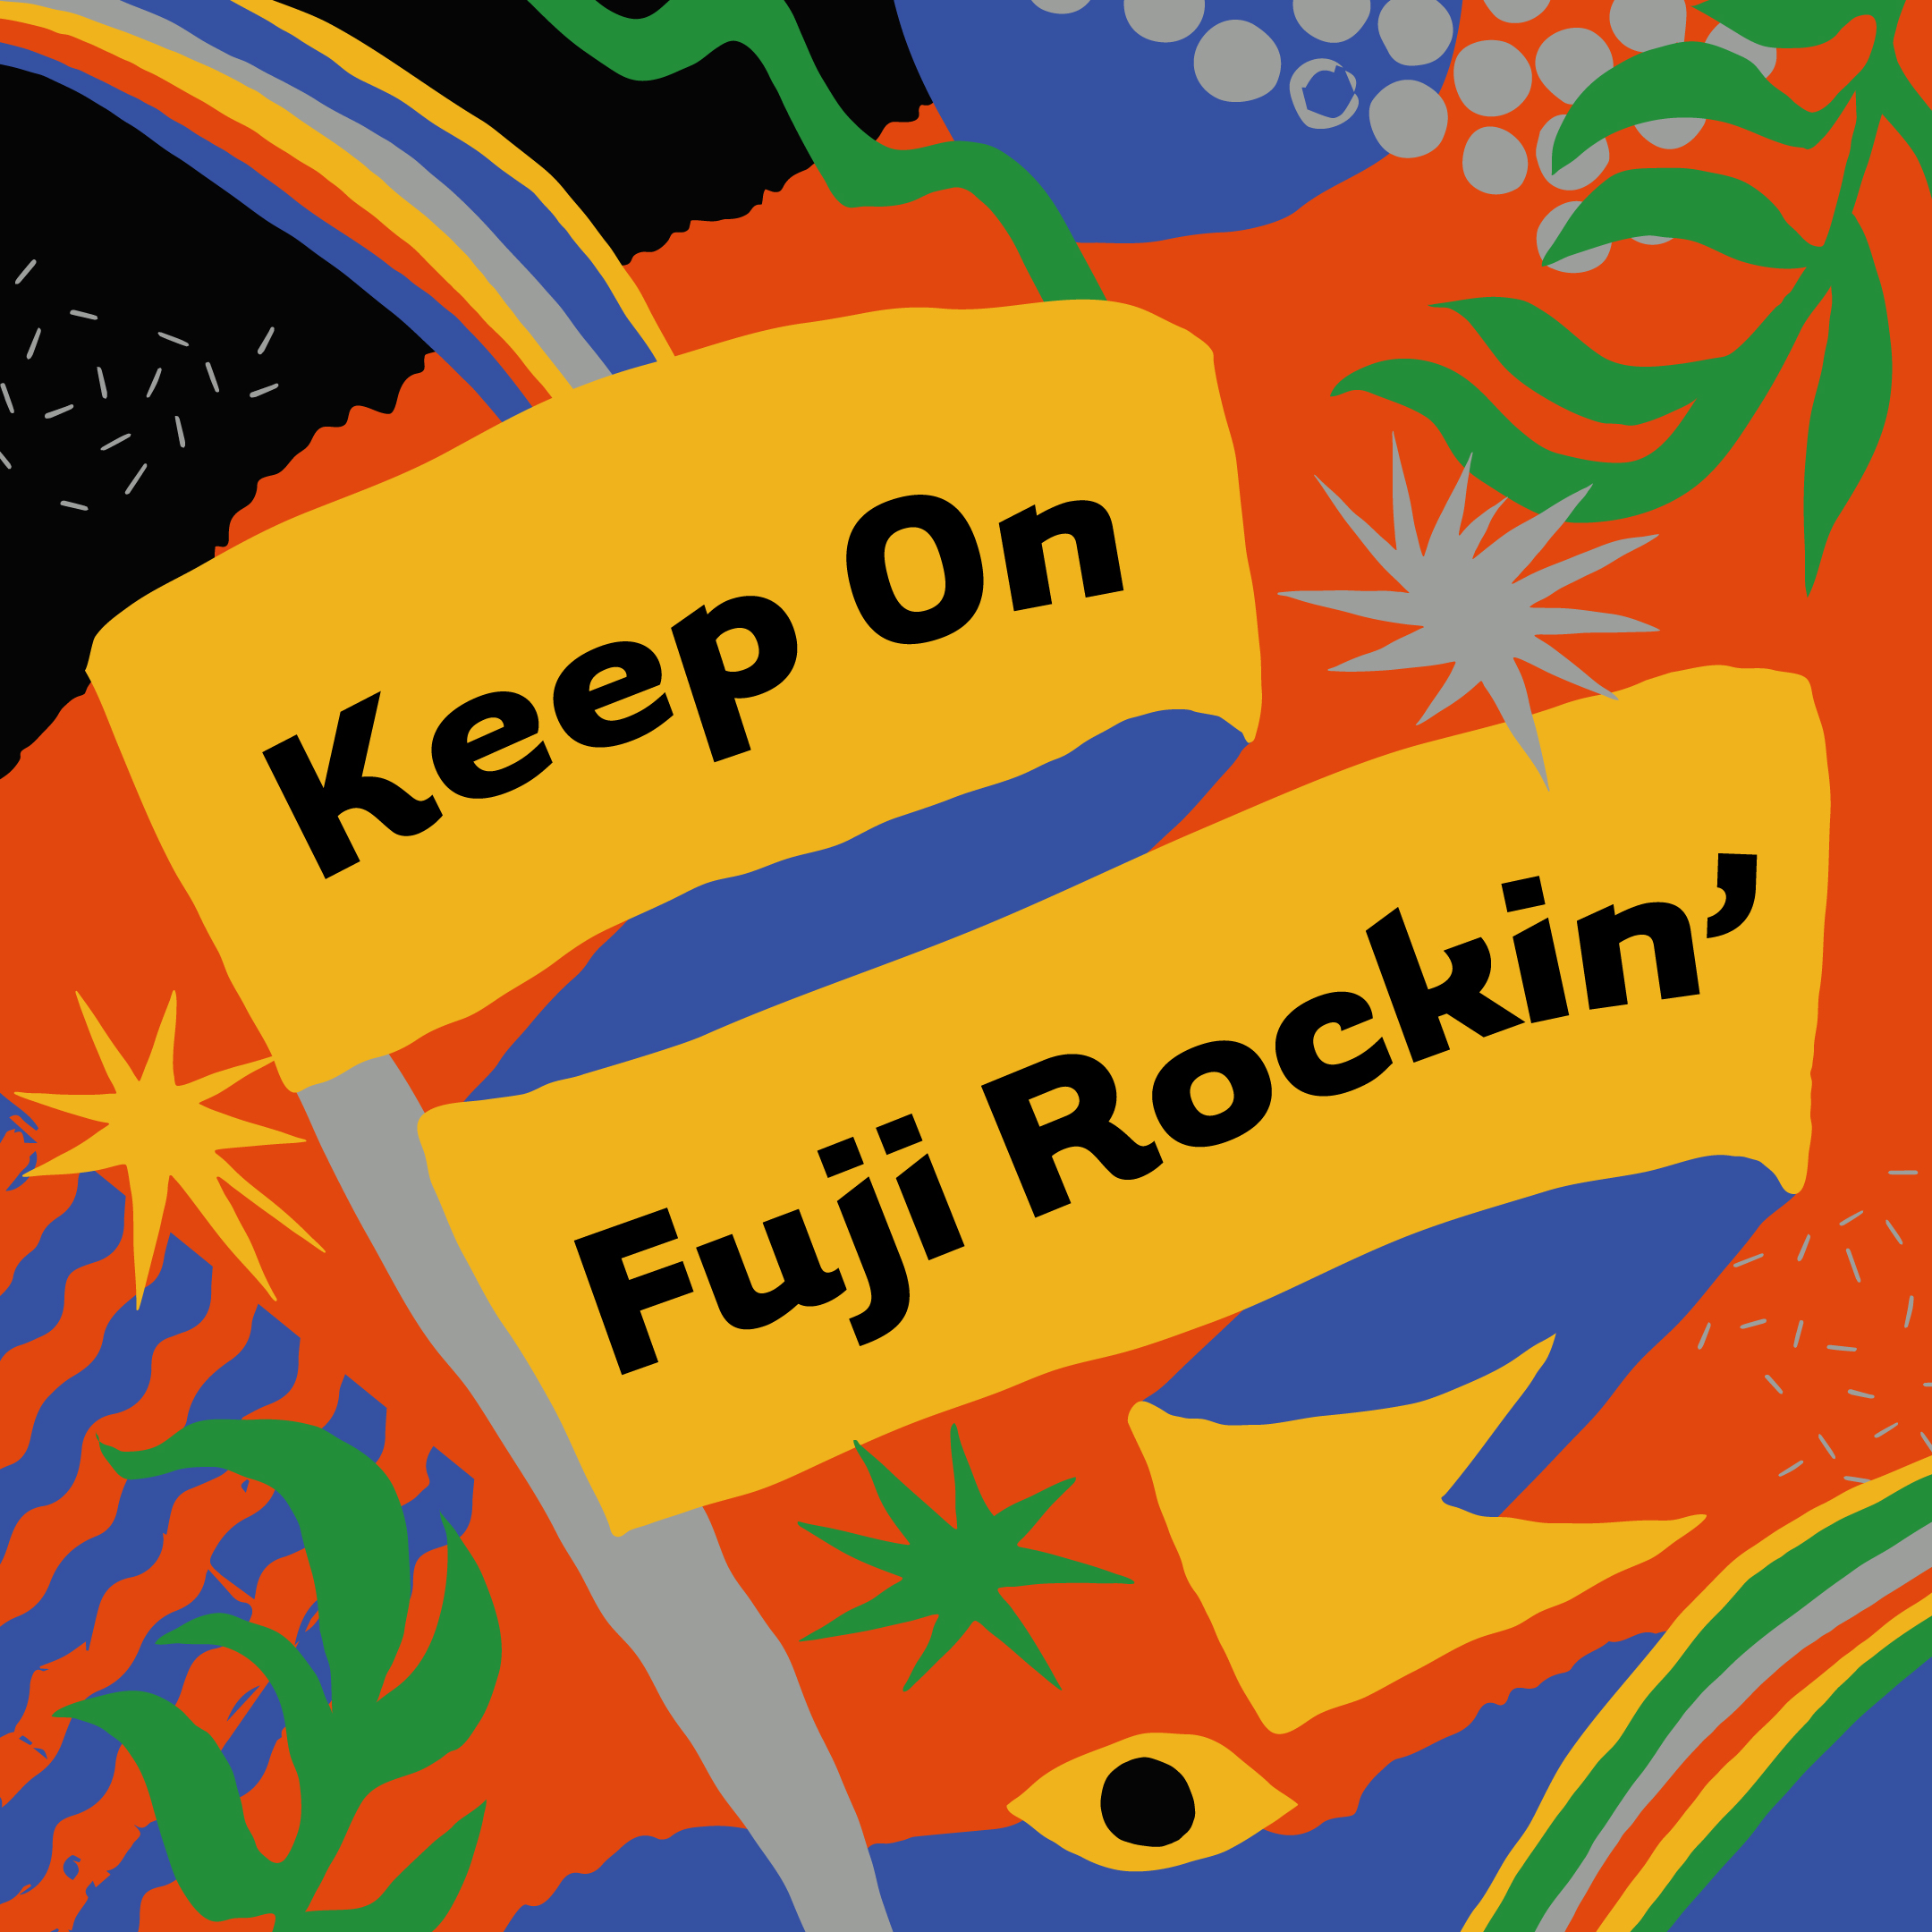 今年在家享受Fuji Rock吧！ 參加「Keep On Fuji Rockin'」支援活動